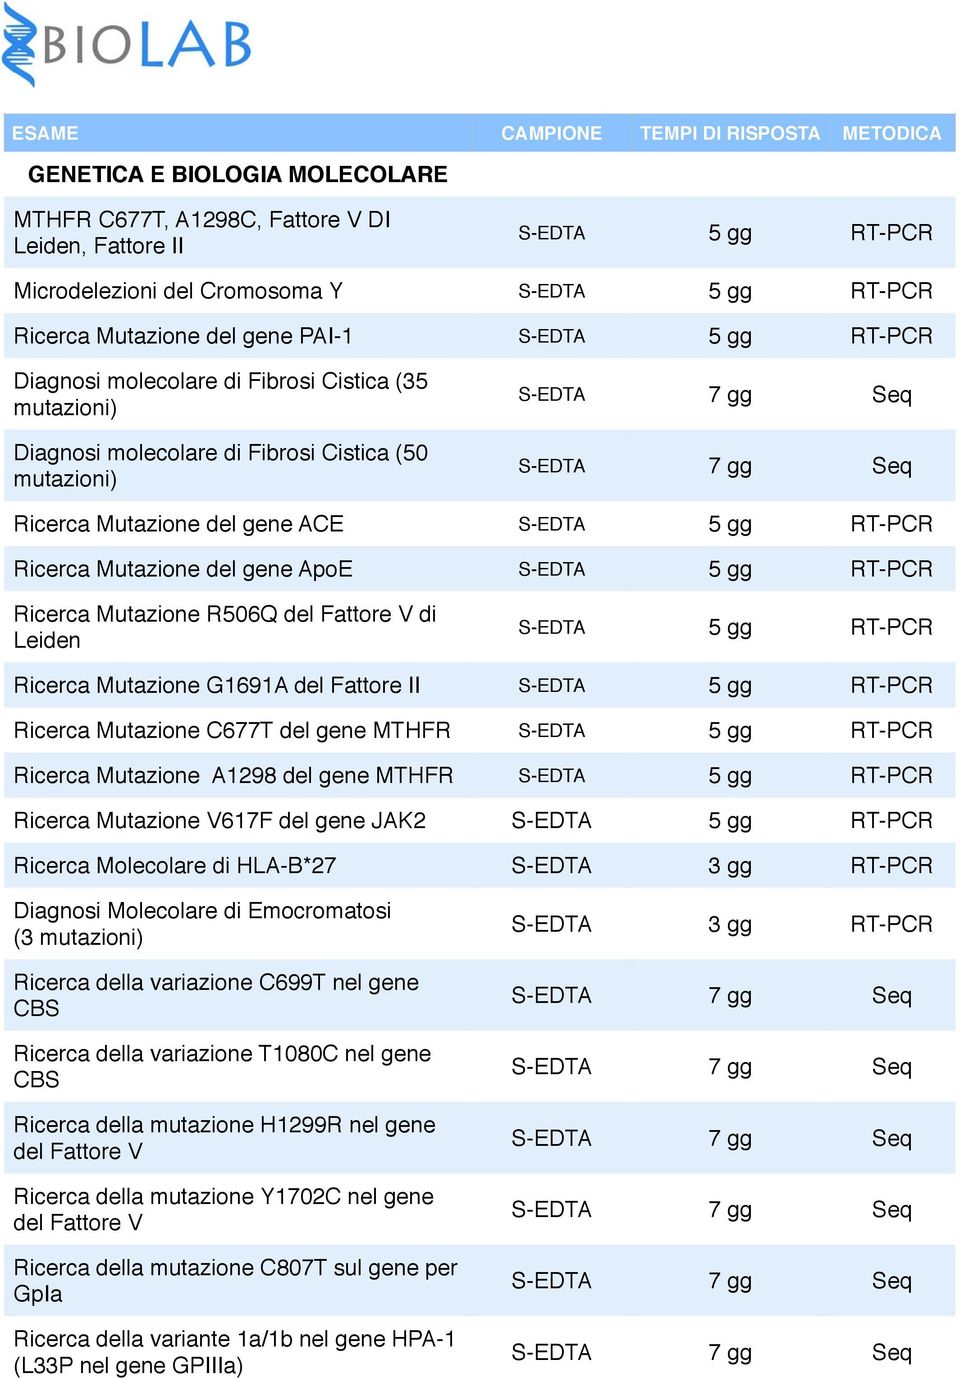 S-EDTA 5 gg RT-PCR Ricerca Mutazione R506Q del Fattore V di Leiden S-EDTA 5 gg RT-PCR Ricerca Mutazione G1691A del Fattore II S-EDTA 5 gg RT-PCR Ricerca Mutazione C677T del gene MTHFR S-EDTA 5 gg